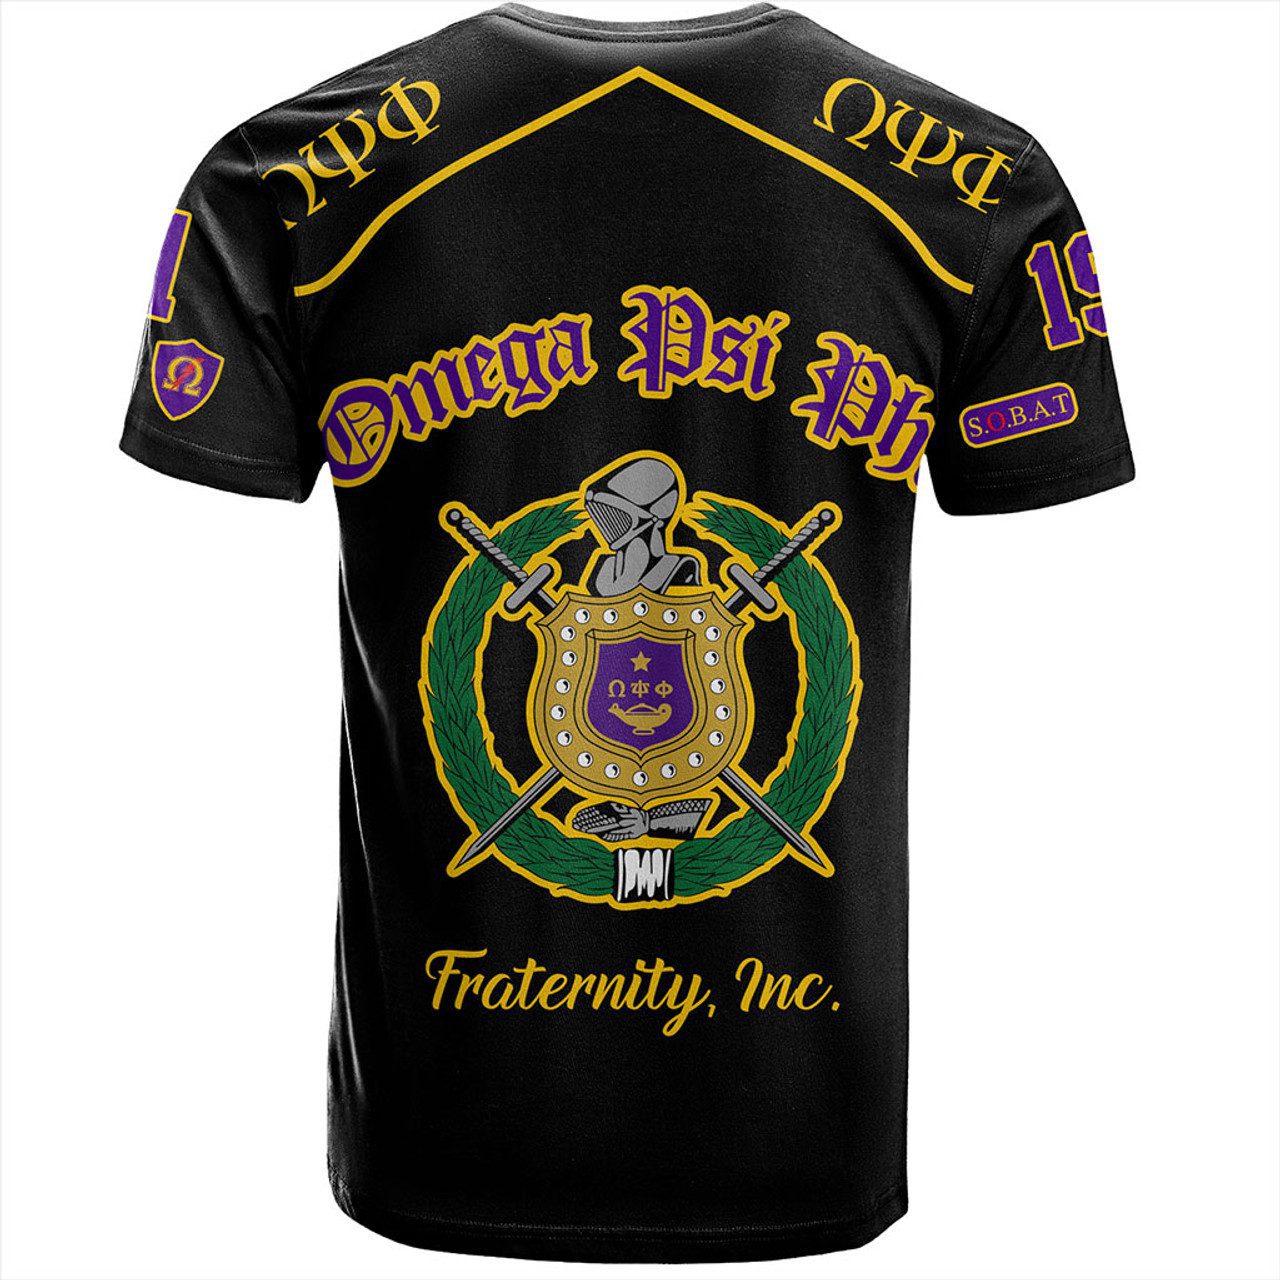 Omega Psi Phi T-Shirt Sobat Fraternity